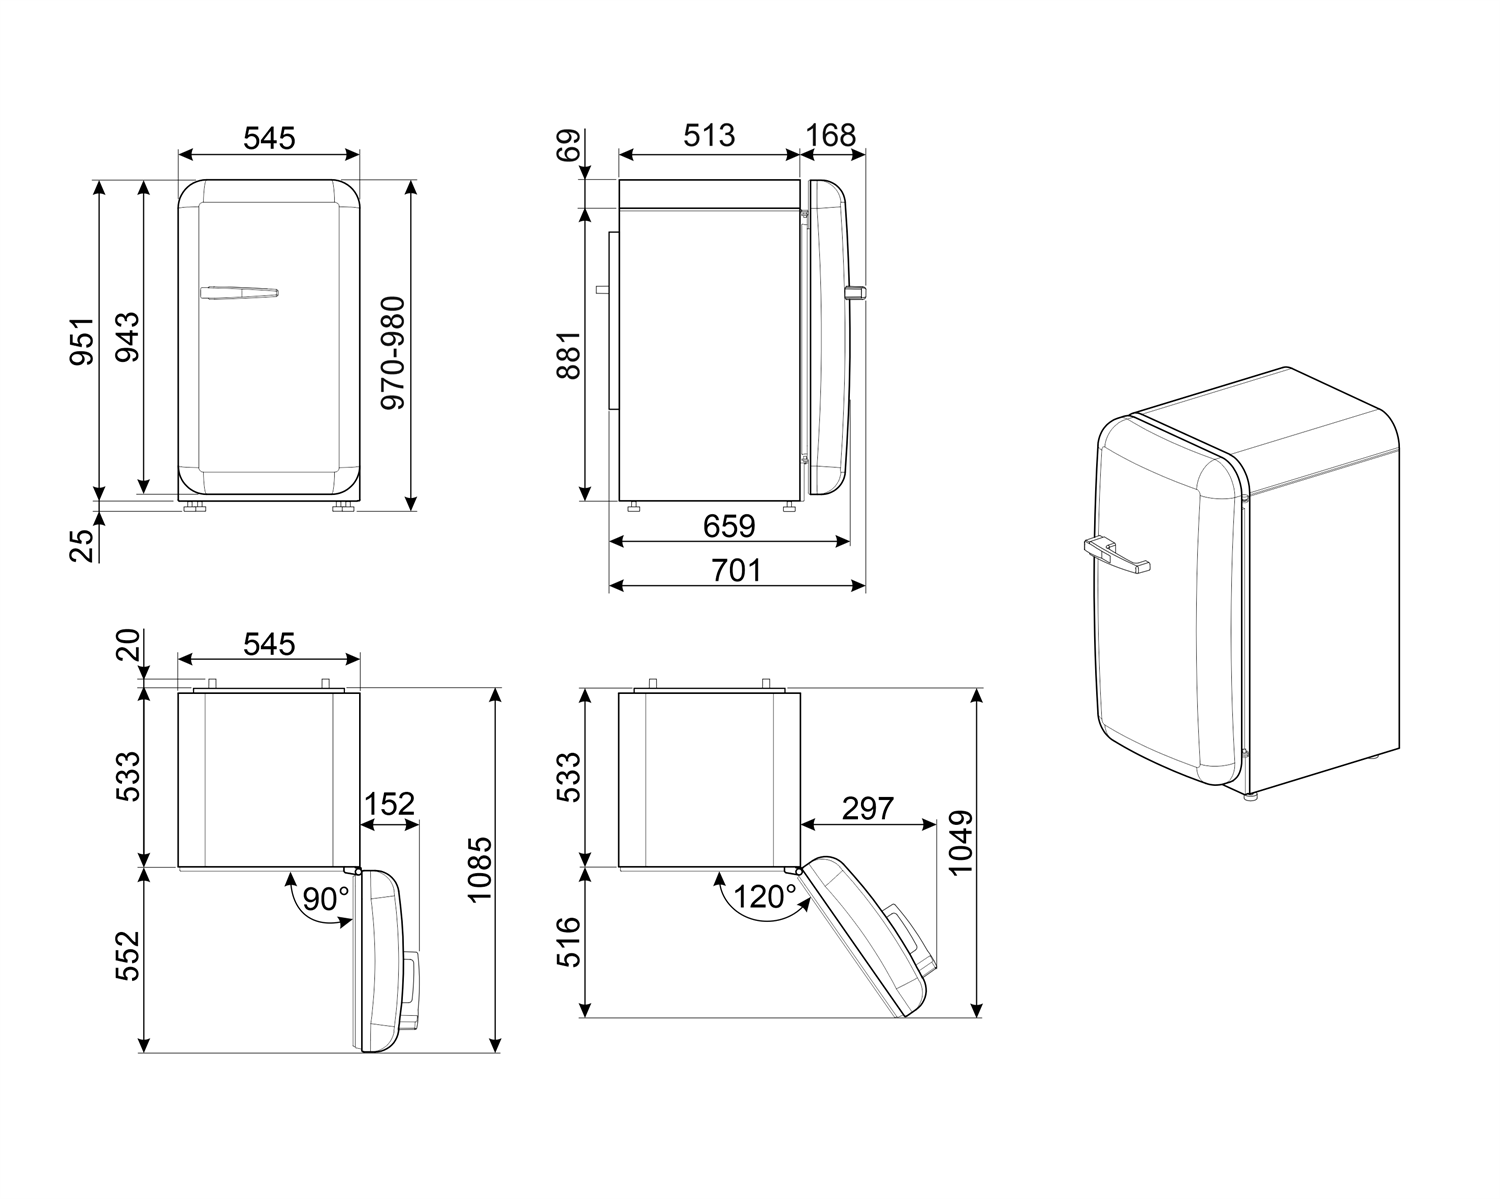 Maattekening SMEG koelkast tafelmodel rood FAB10HRRD5